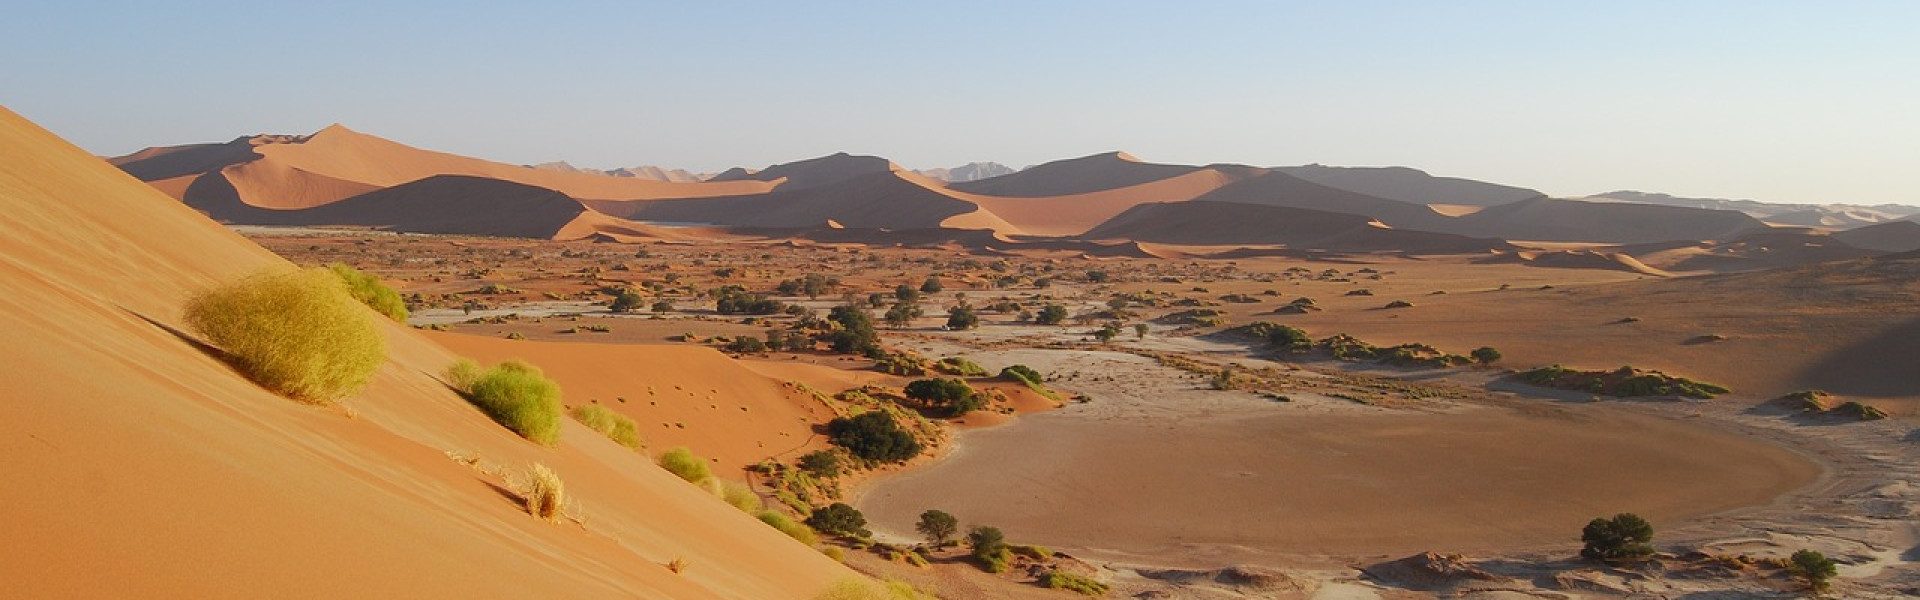 Partez à l'aventure en Namibie : un circuit touristique inoubliable